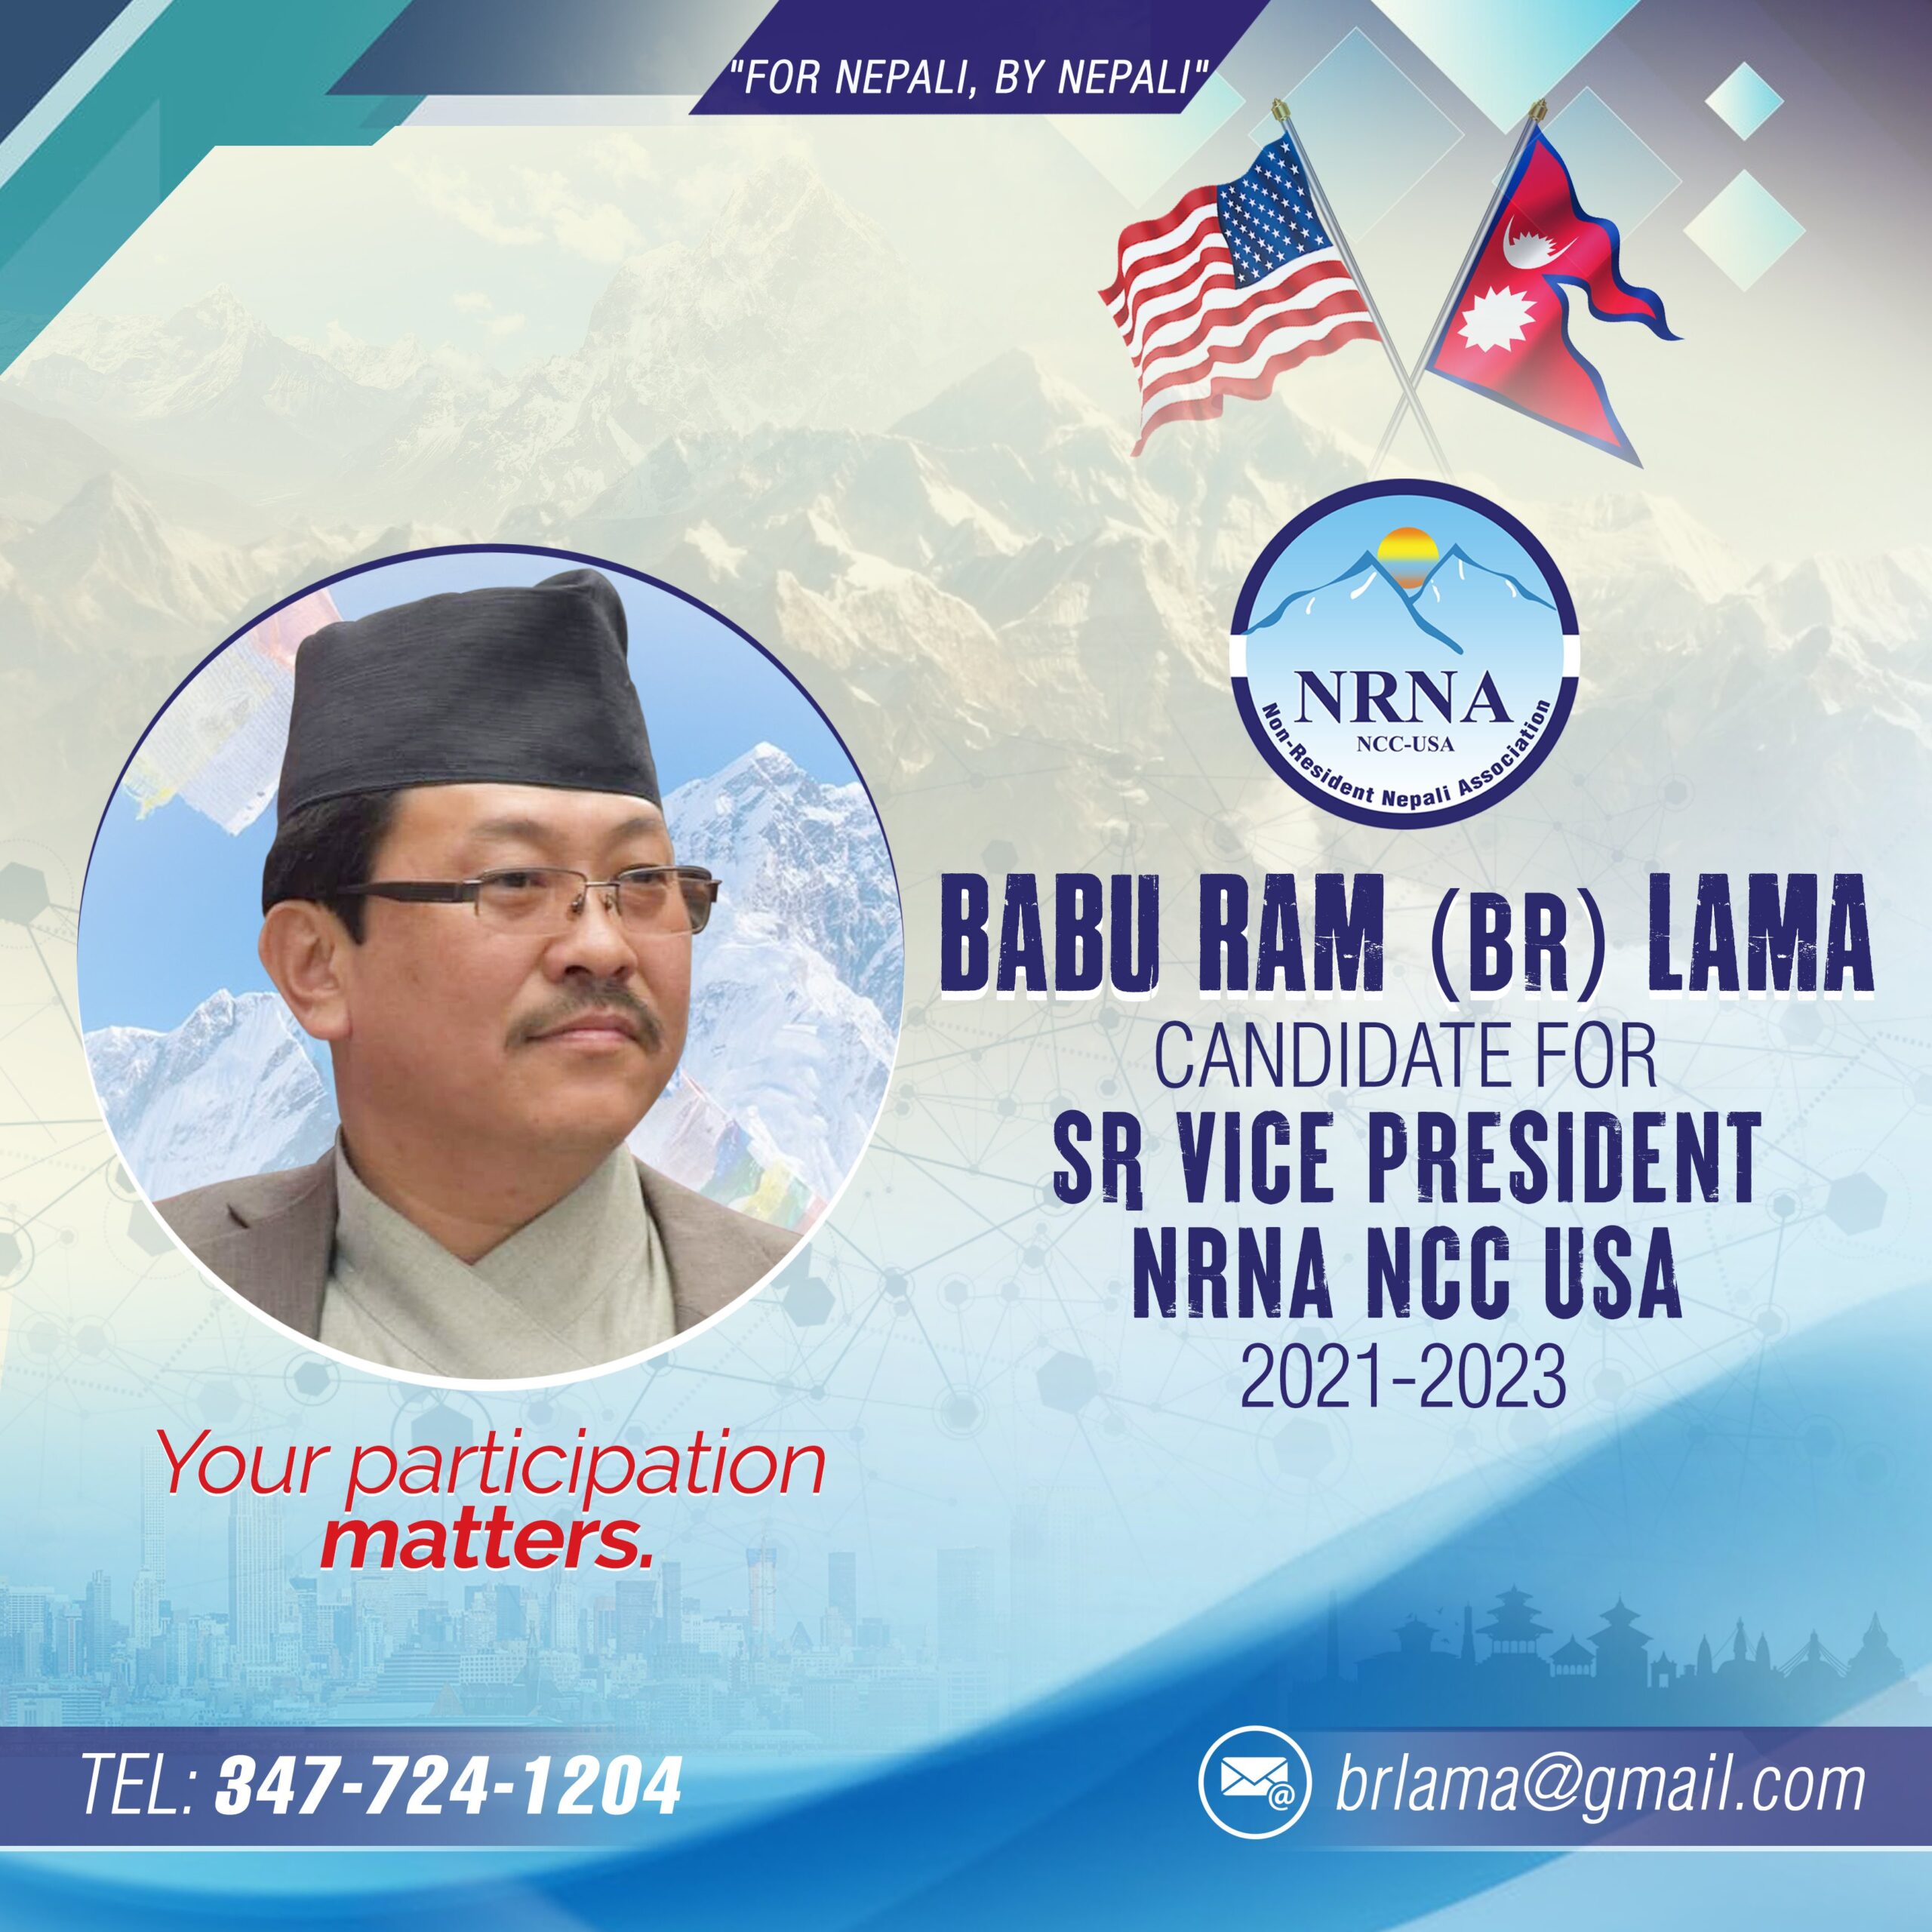 बि आर लामा, एनआरएनए अमेरिकाको वरिष्ठ उपाध्यक्ष पदमा निर्वाचन लड्ने